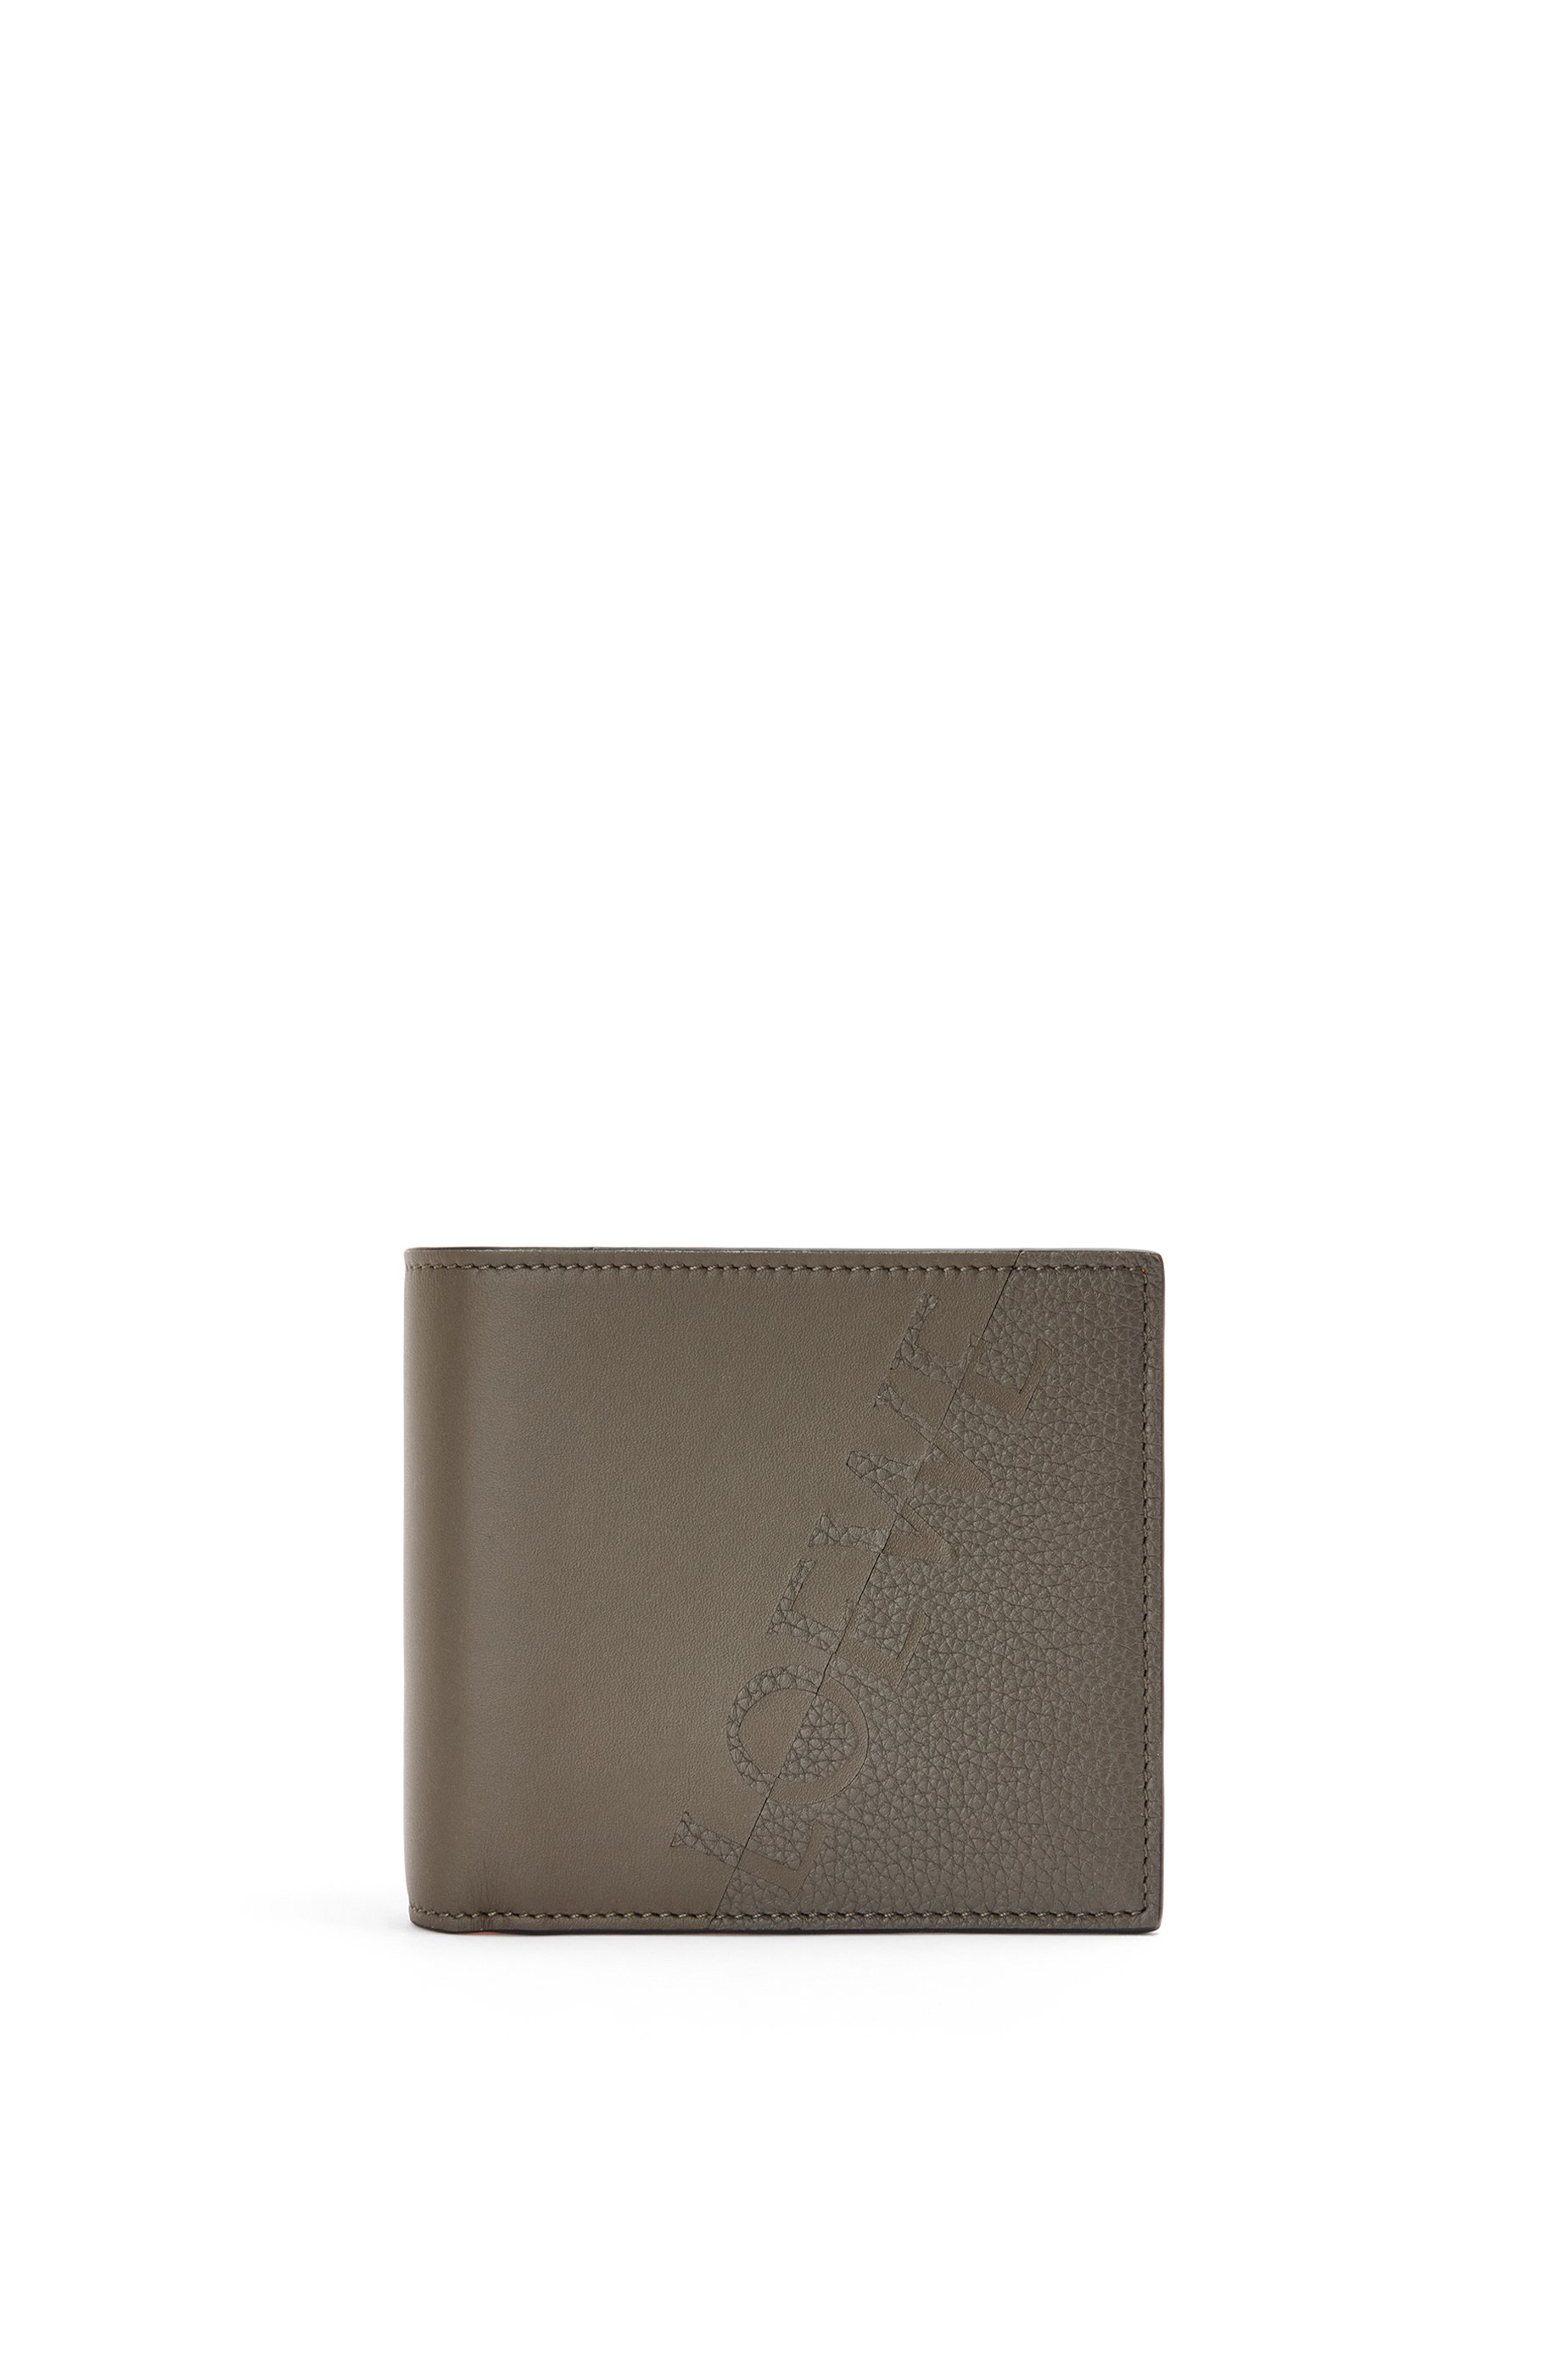 LOEWE Men Accessories Bags Wallets Luxury Signature bifold wallet in calfskin for Men 